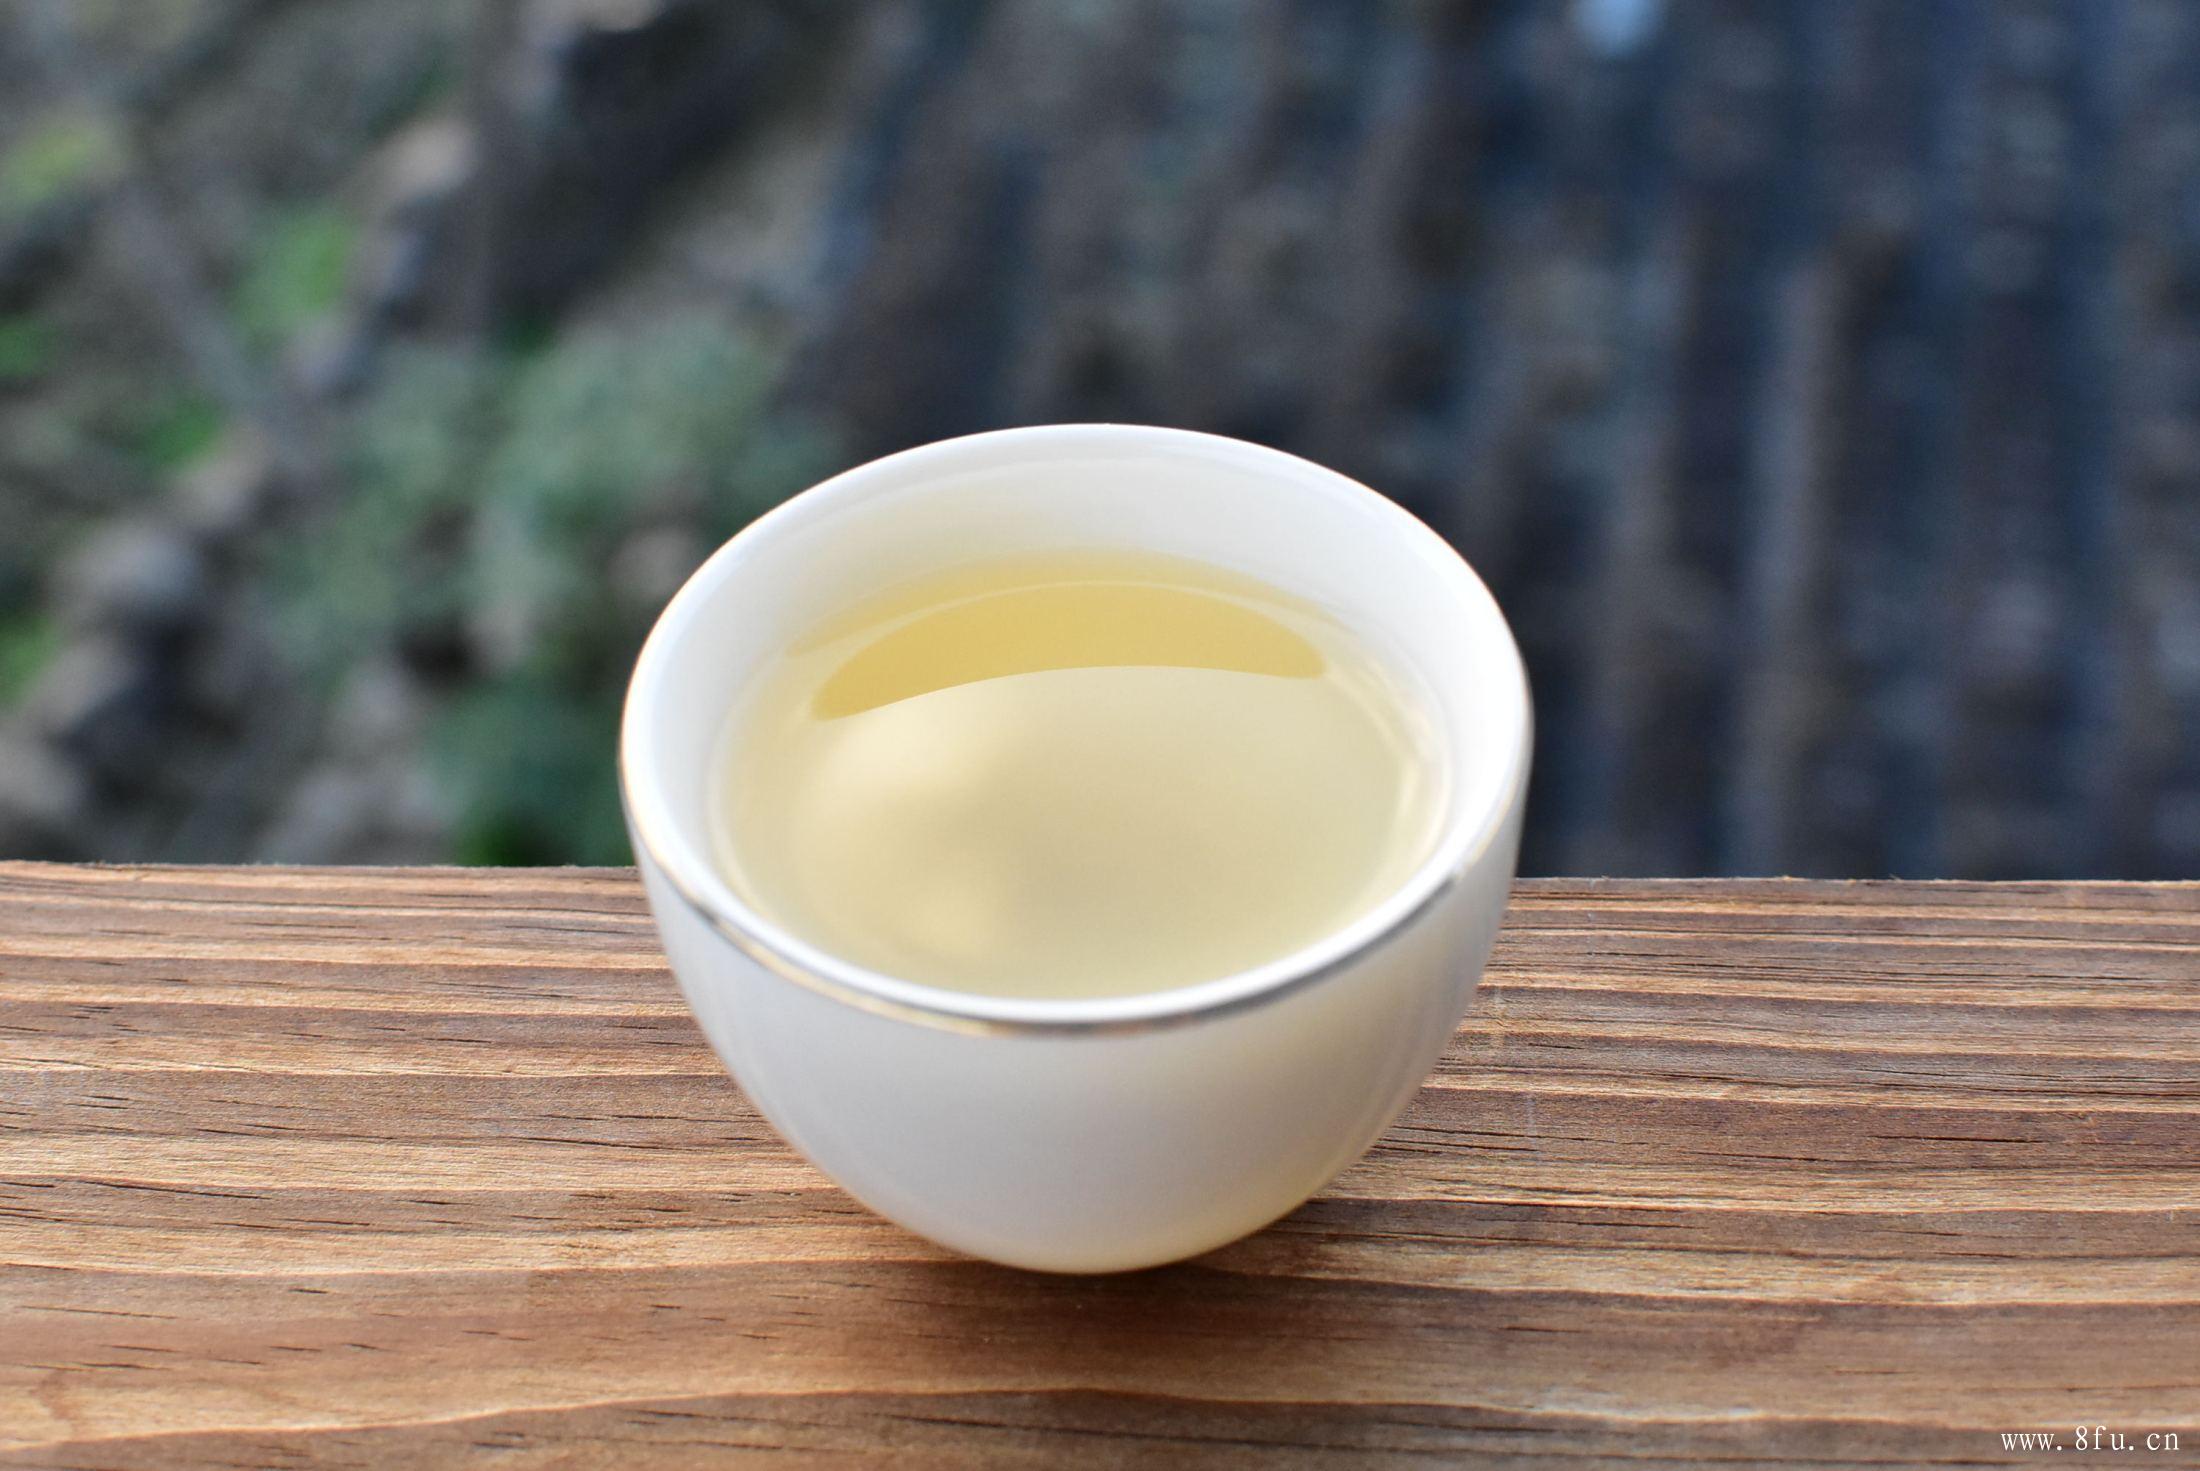 白牡丹制作工艺流程,理解白茶的重萎凋是要点